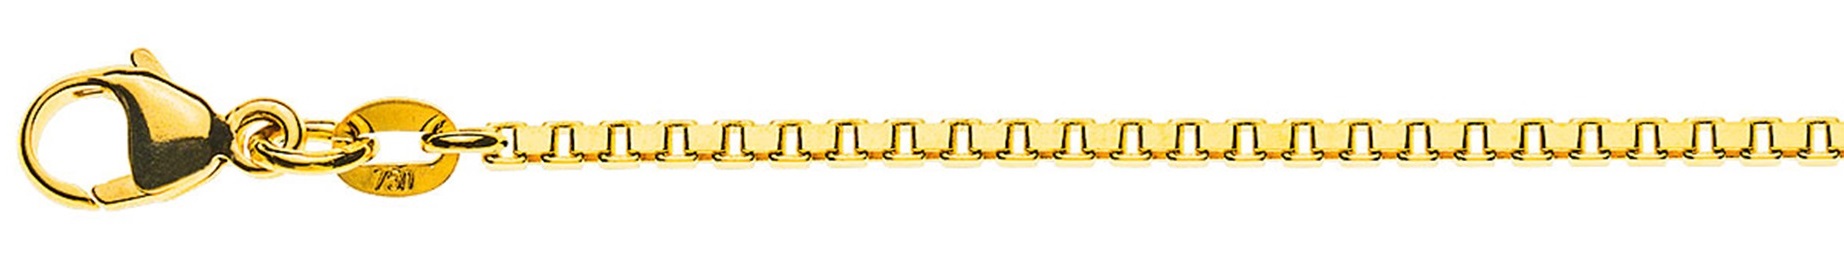 AURONOS Prestige Halskette Gelbgold 18K Venezianerkette diamantiert 40cm 1.6mm